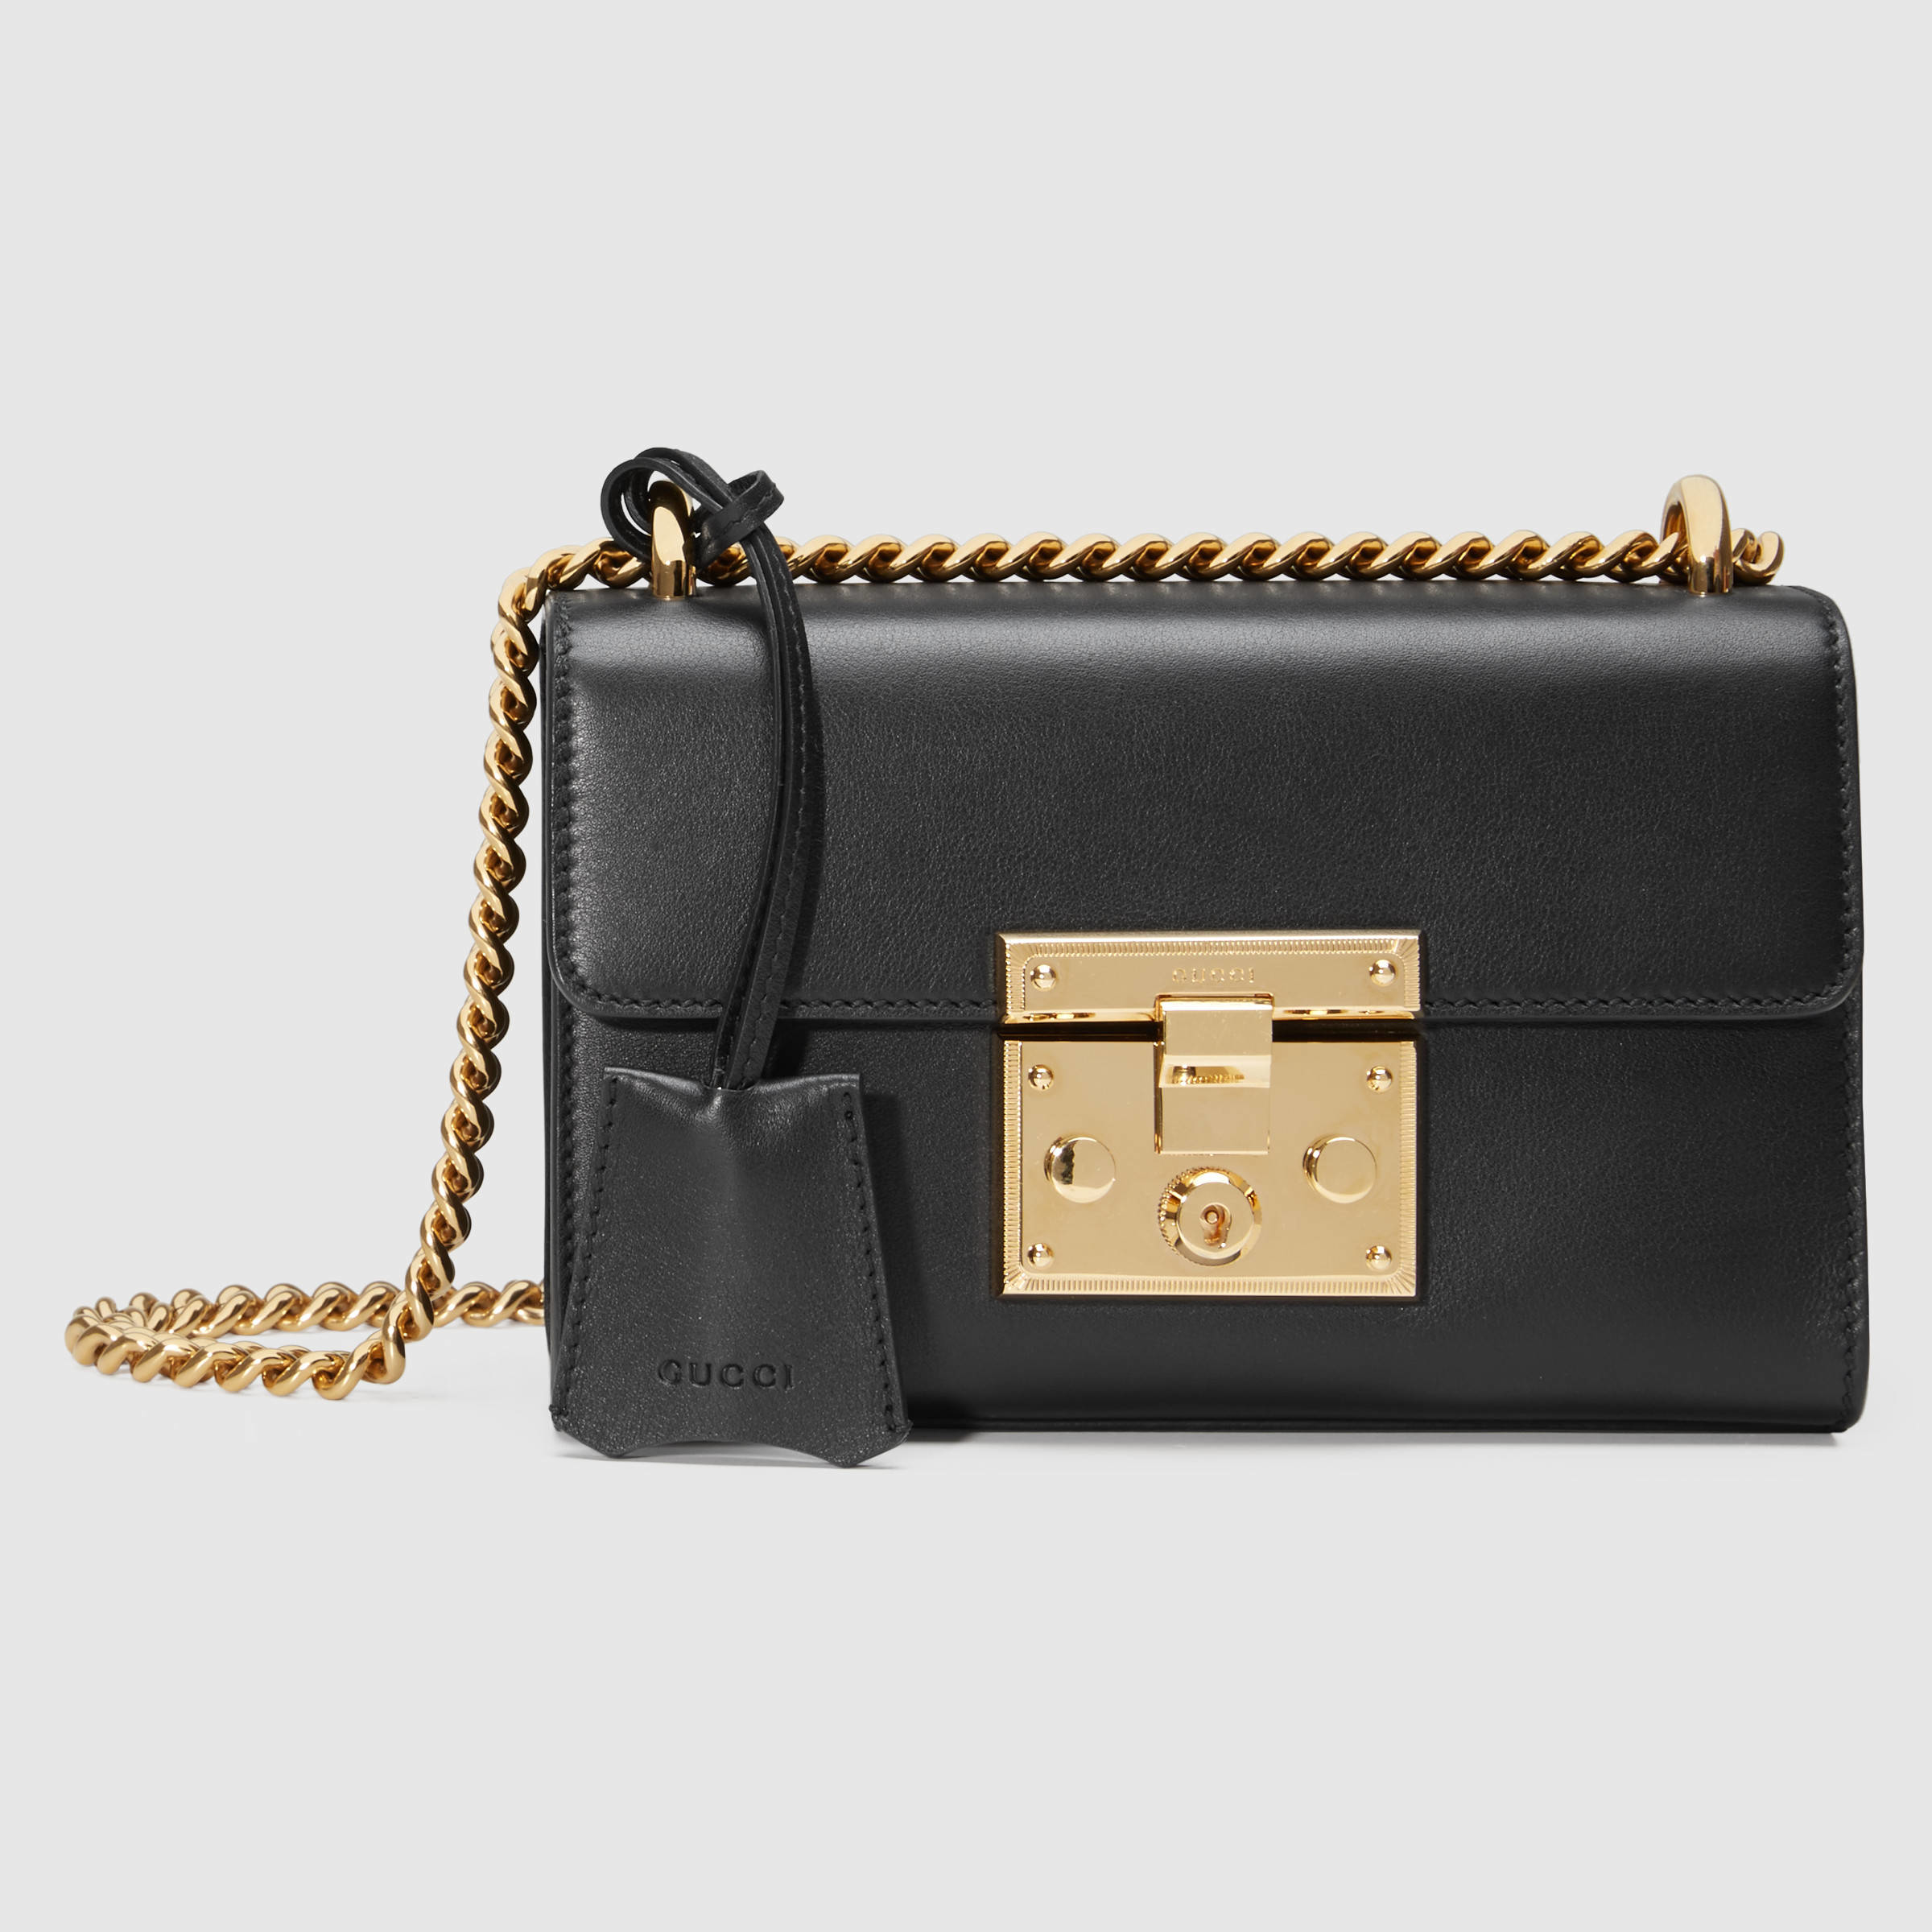 Lyst - Gucci Padlock Leather Shoulder Bag in Black